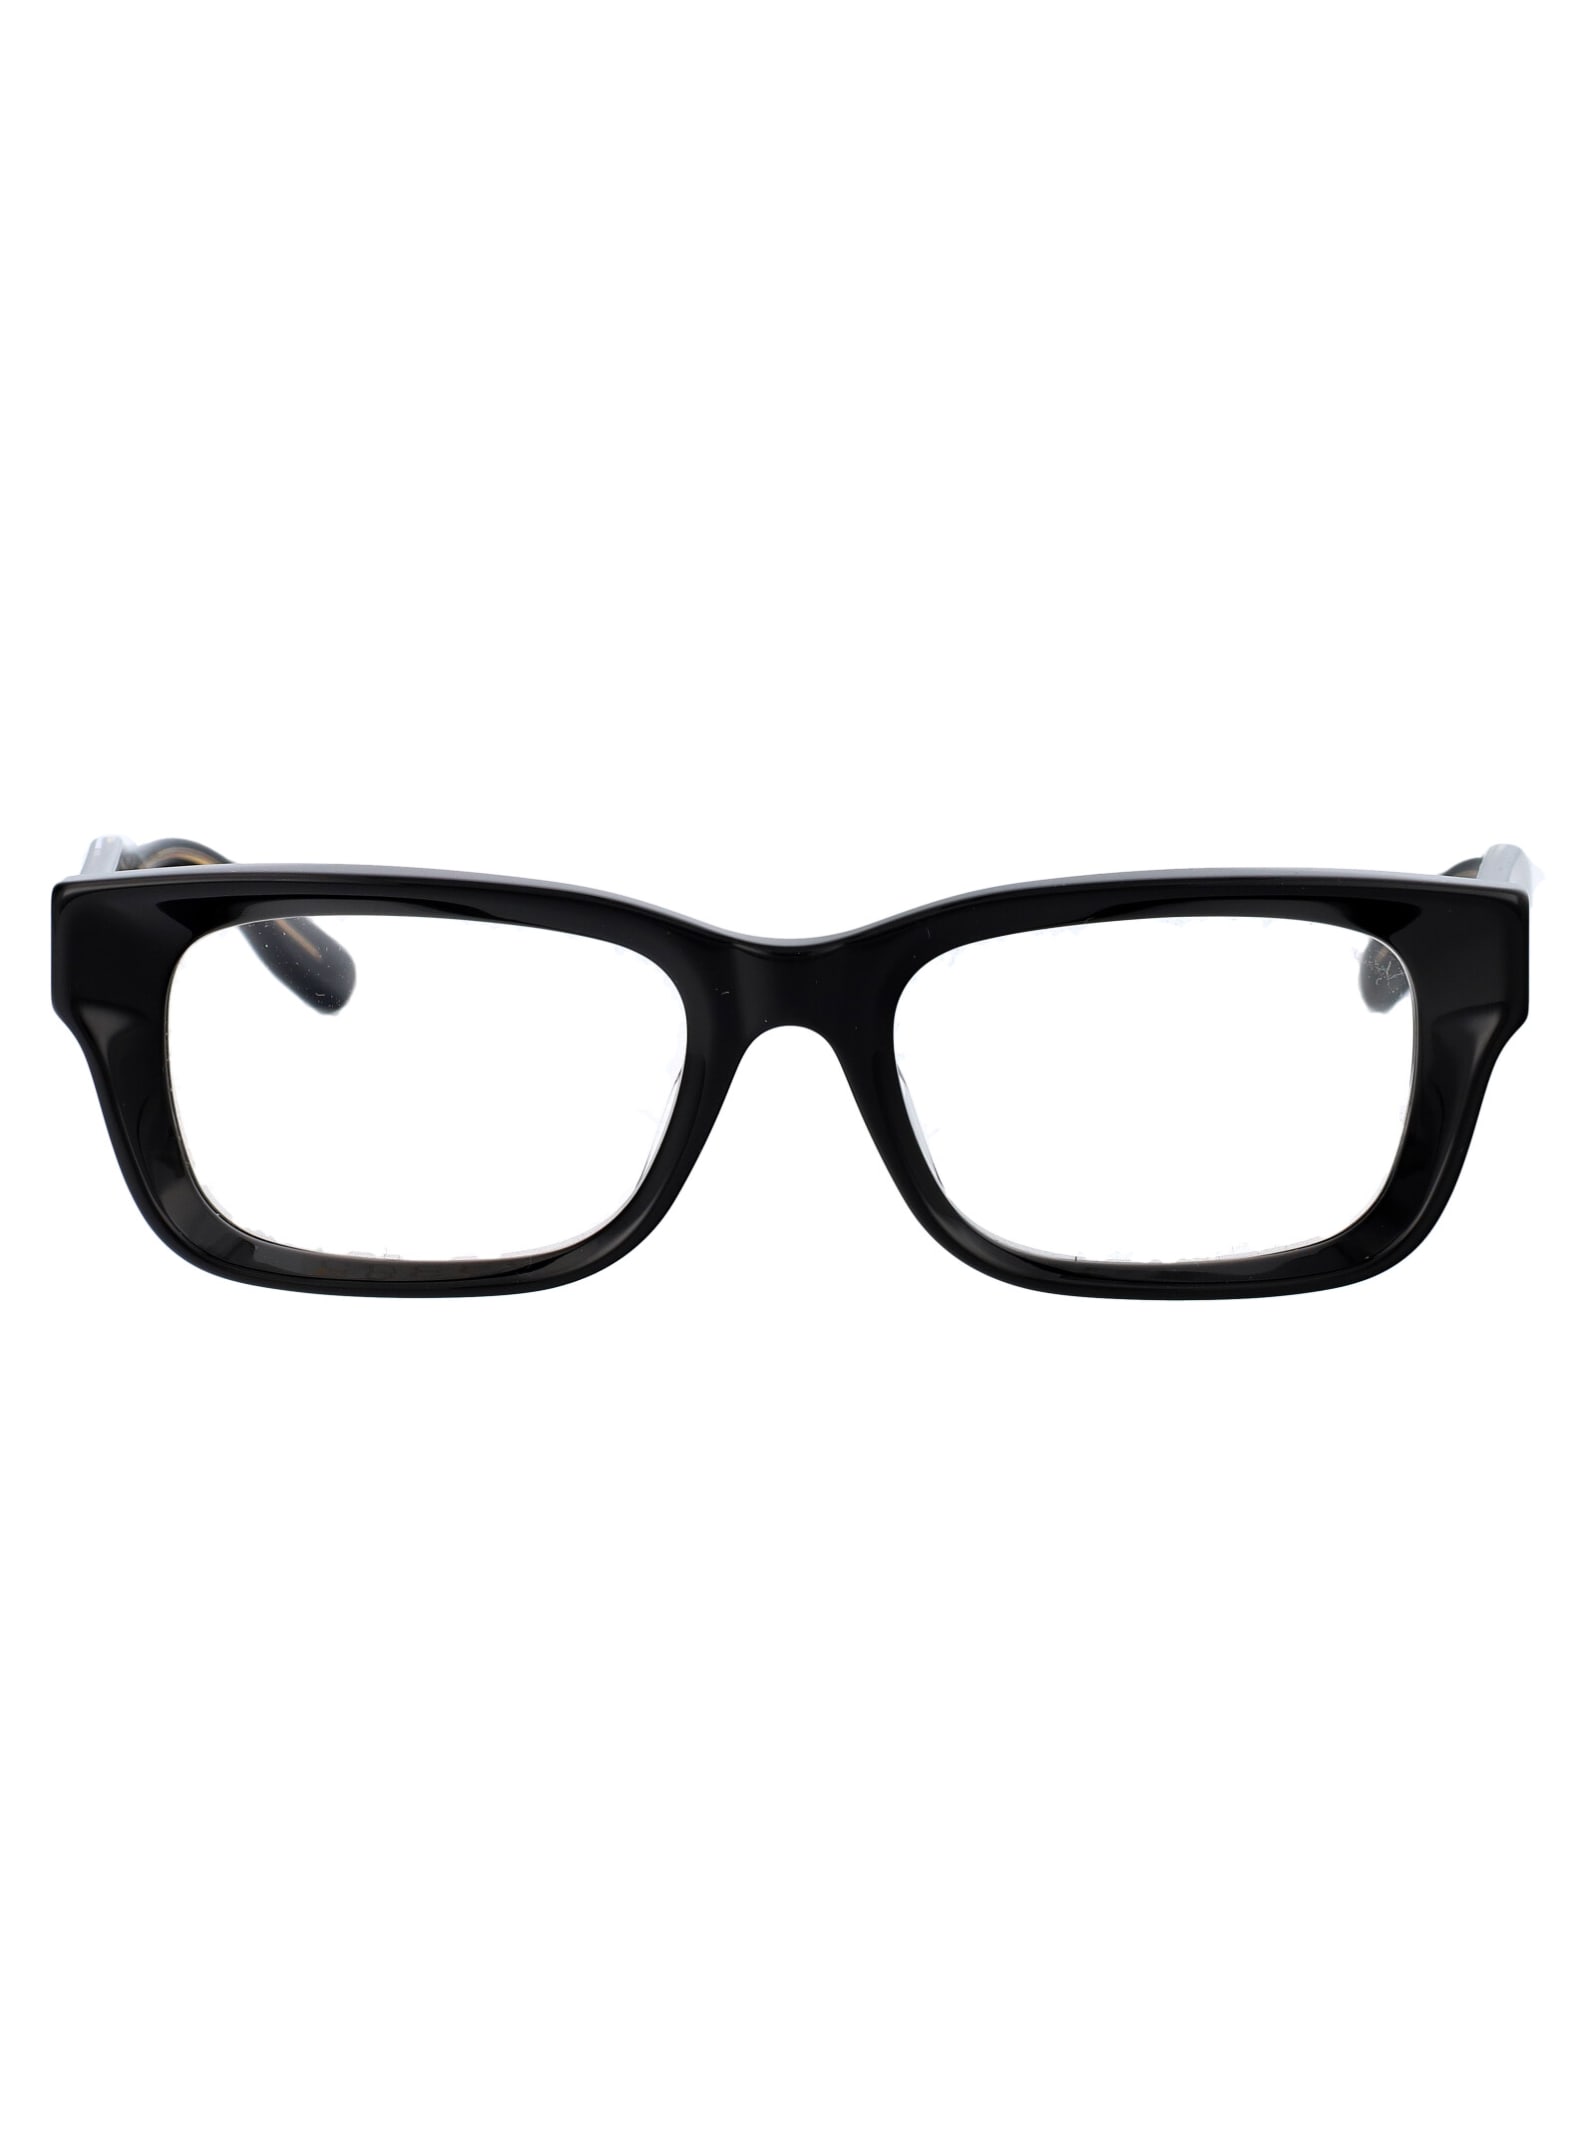 Gg1533oa Glasses